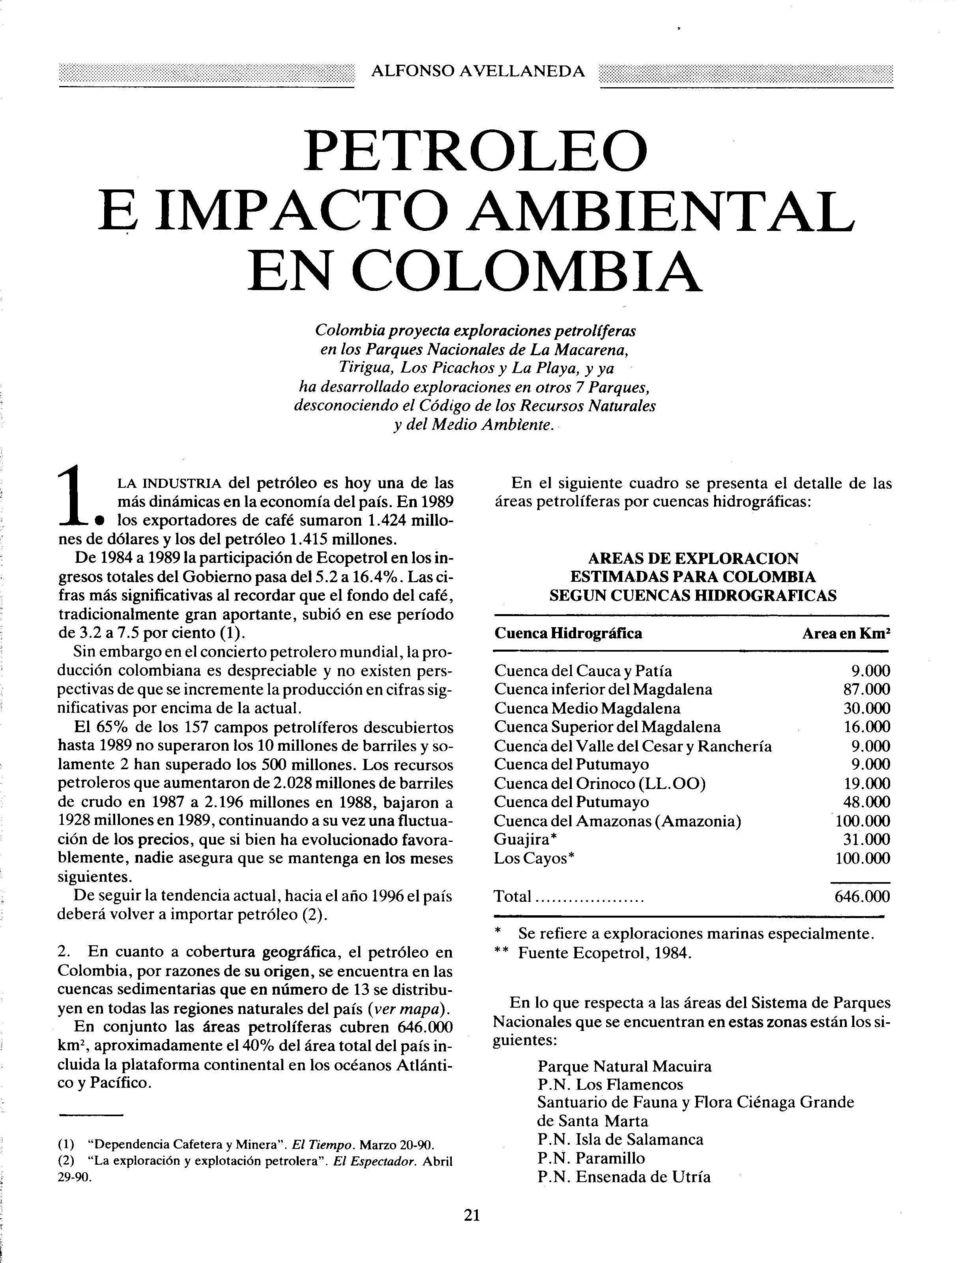 En 1989 1.LA los exportadores de café sumaron 1.424 millones de dólares y los del petróleo 1.415 millones. De 1984 a 1989 la participación de Ecopetrol en los ingresos totales del Gobierno pasa del 5.